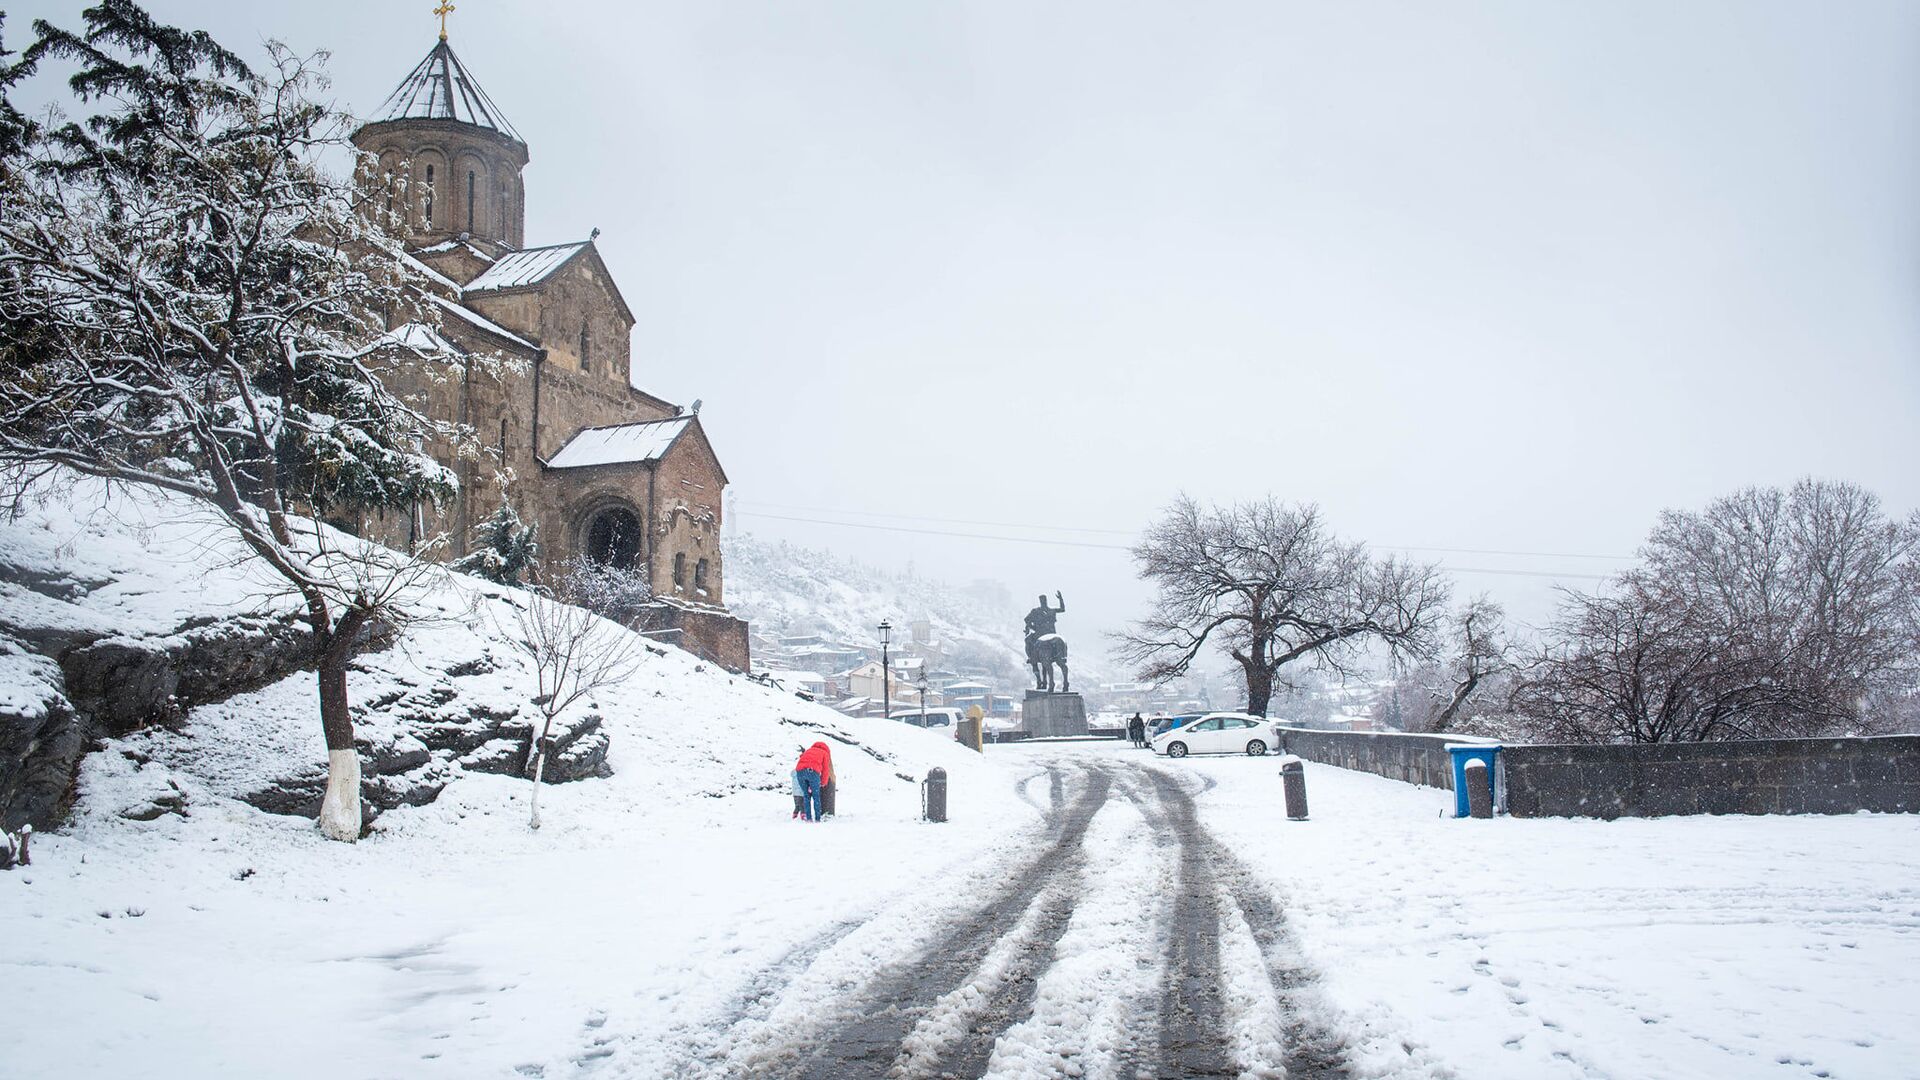 Февральский снегопад в Тбилиси - Метехская церковь в снегу - Sputnik Грузия, 1920, 12.01.2023